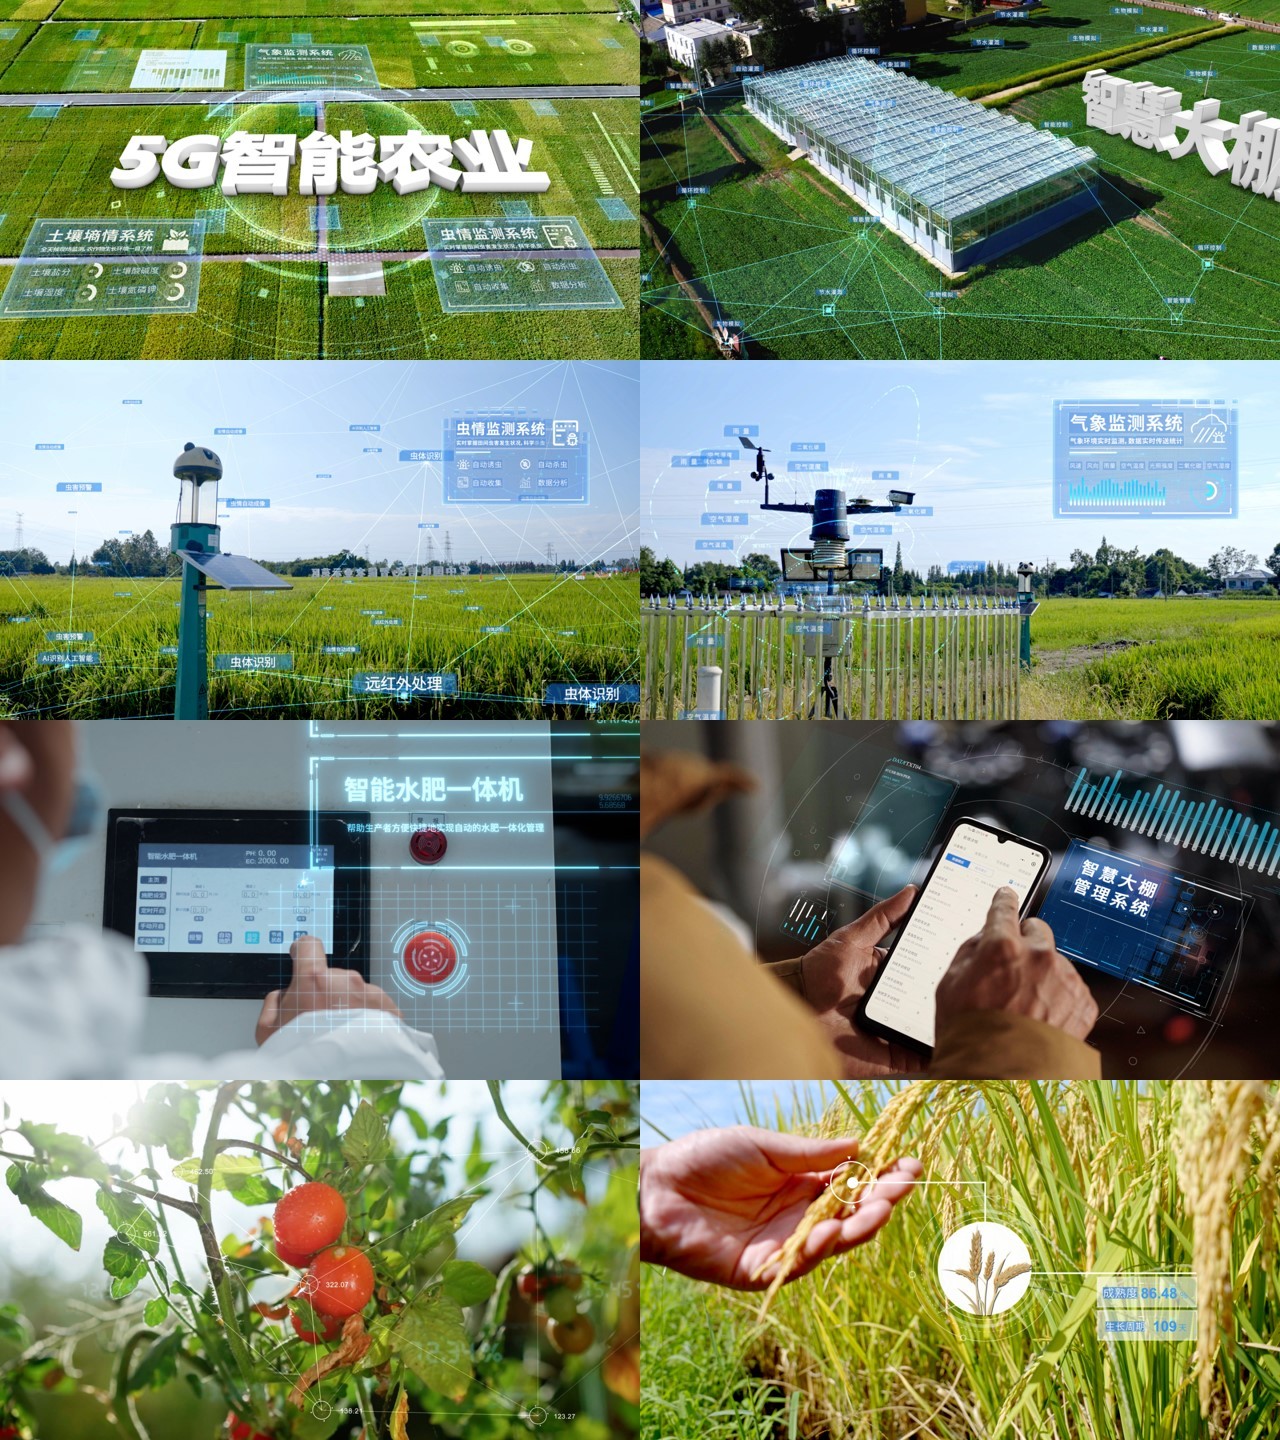 科技农业 智慧农业 智慧设施